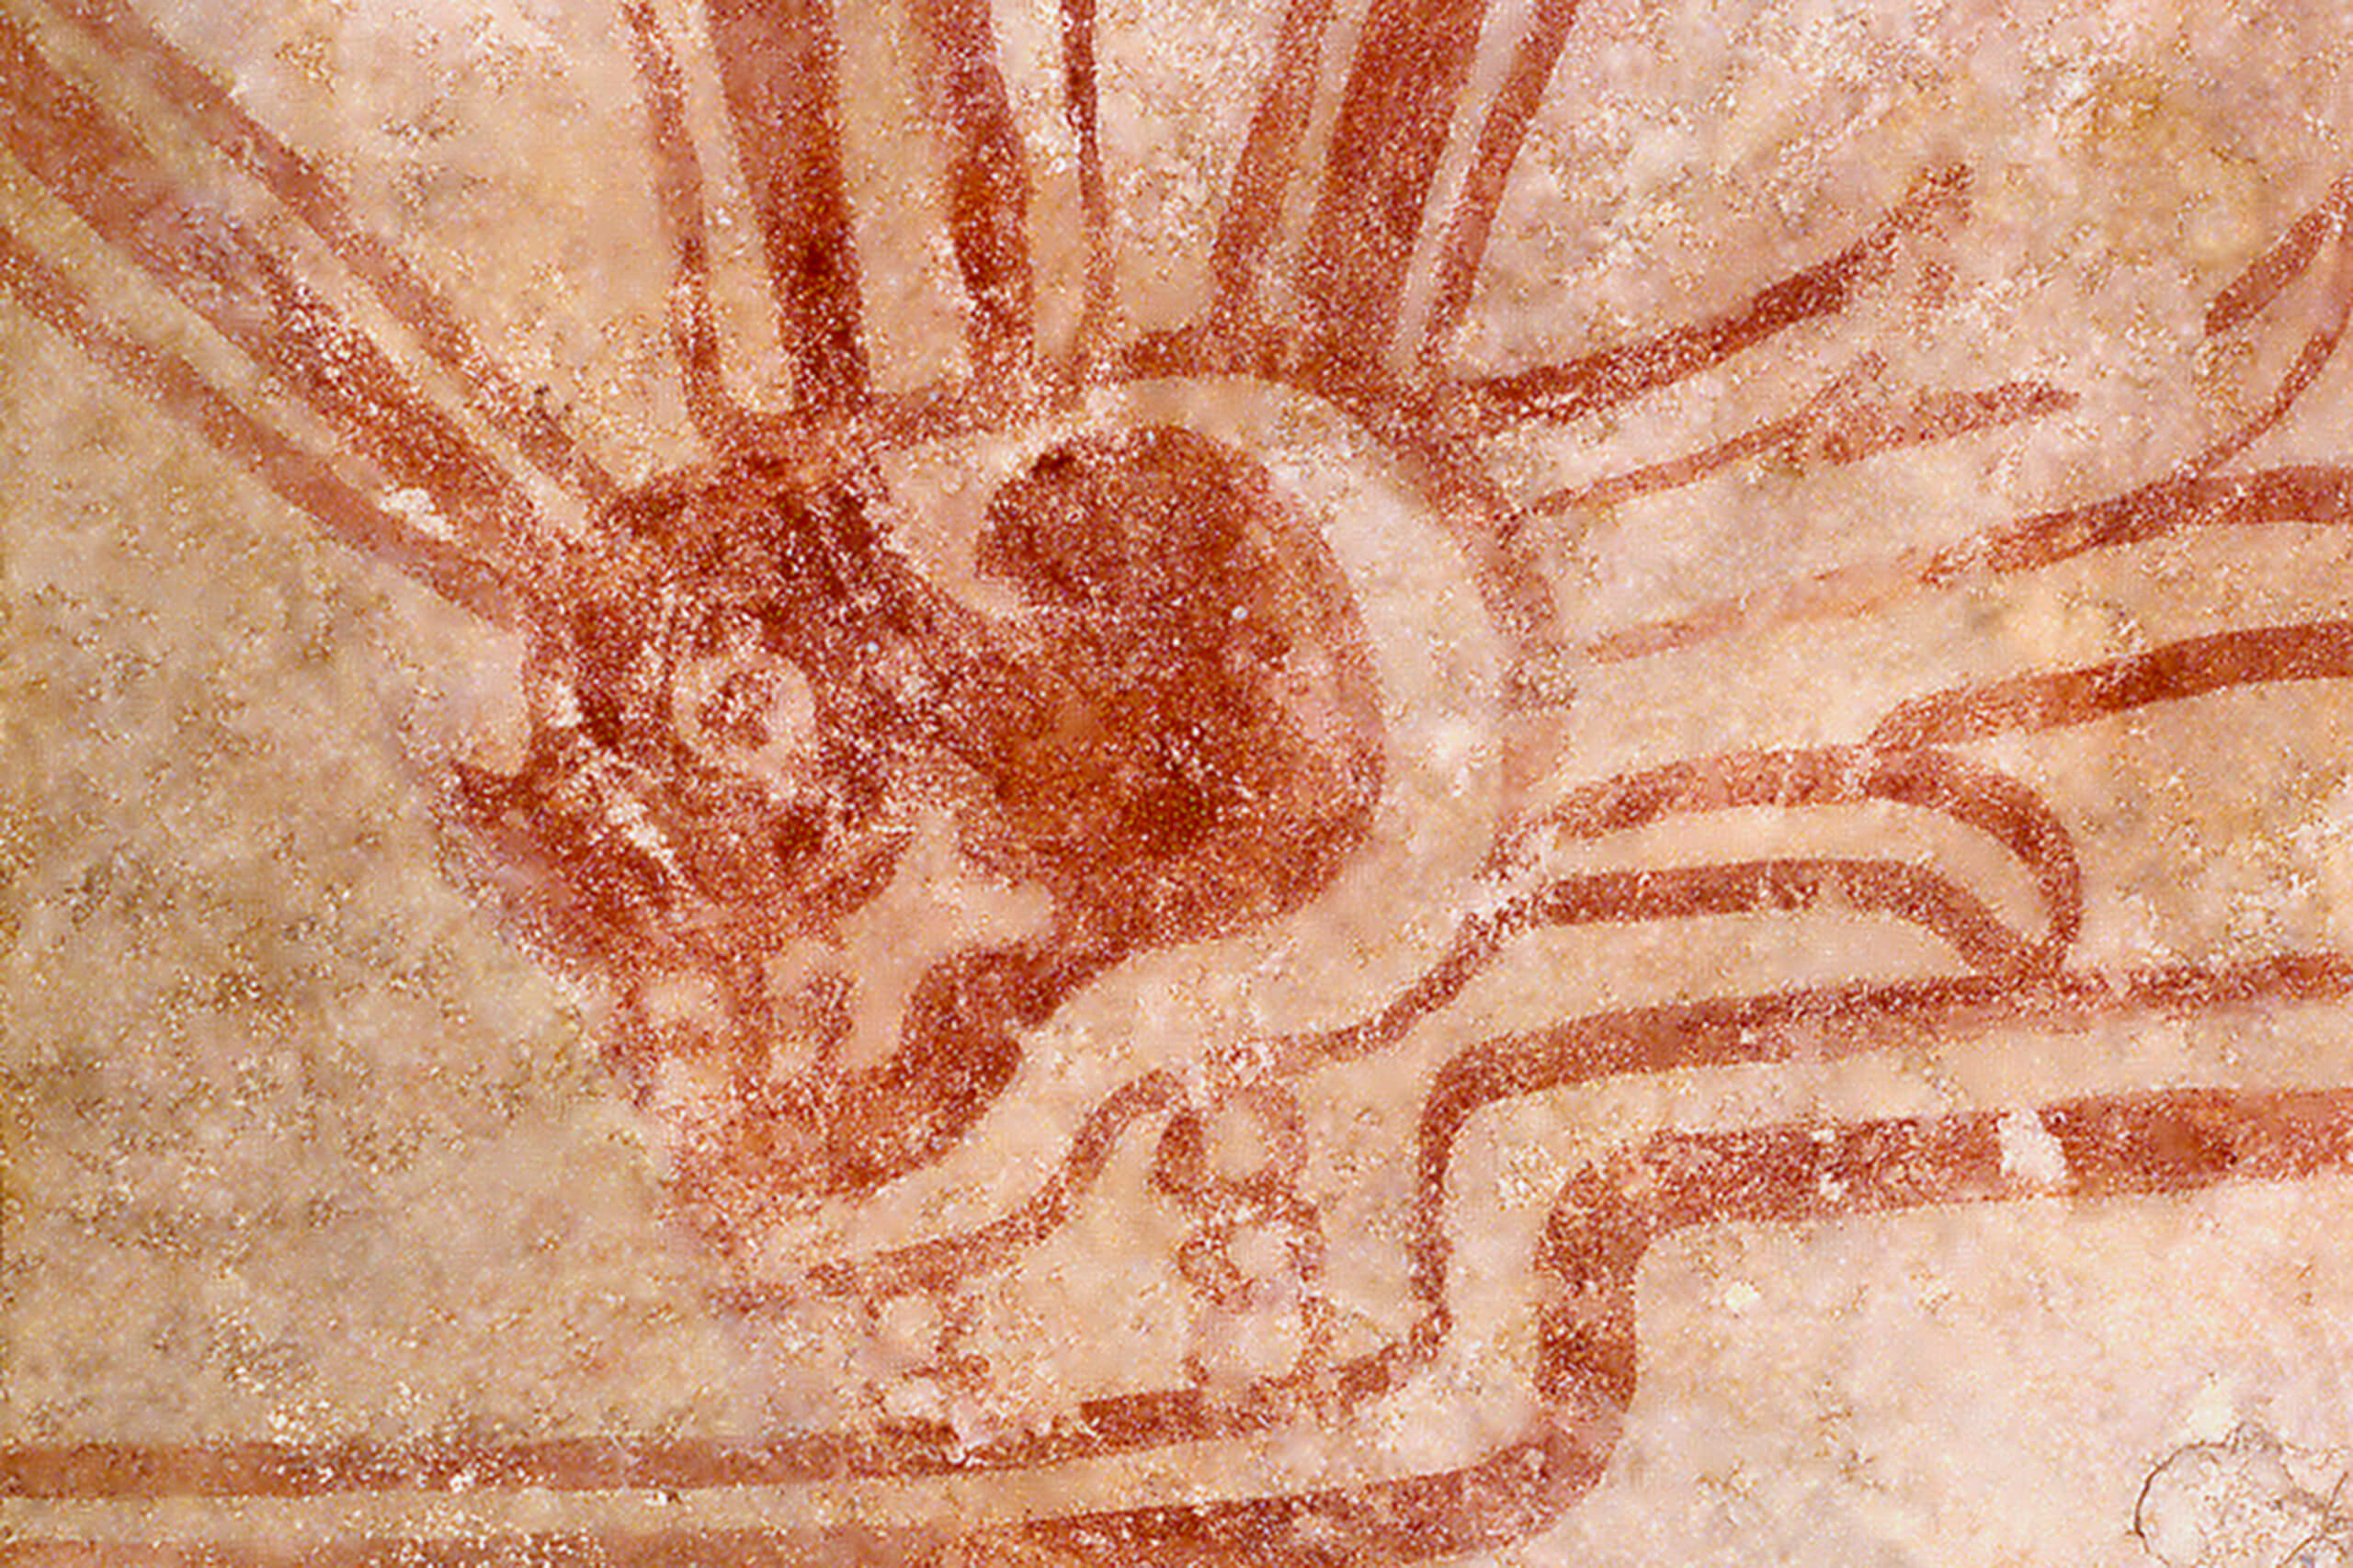 Fragmento de pintura mural con escena alusiva a la muerte y el sacrificio | El México antiguo. Salas de Arte Prehispánico | Museo Amparo, Puebla